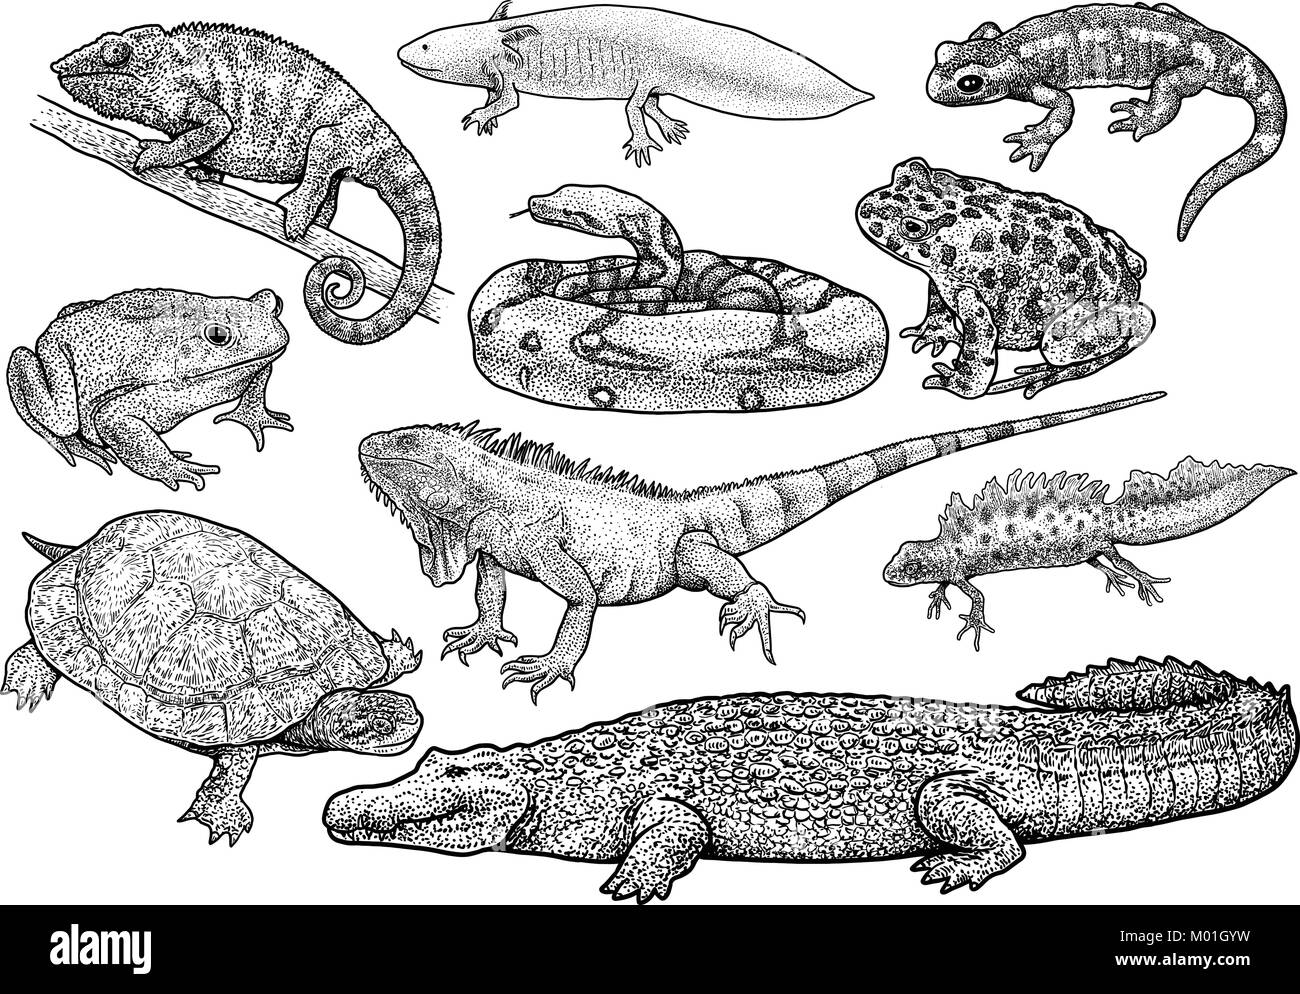 Amphibiens et reptiles collection illustration, dessin, gravure, encre, dessin au trait, vector Illustration de Vecteur